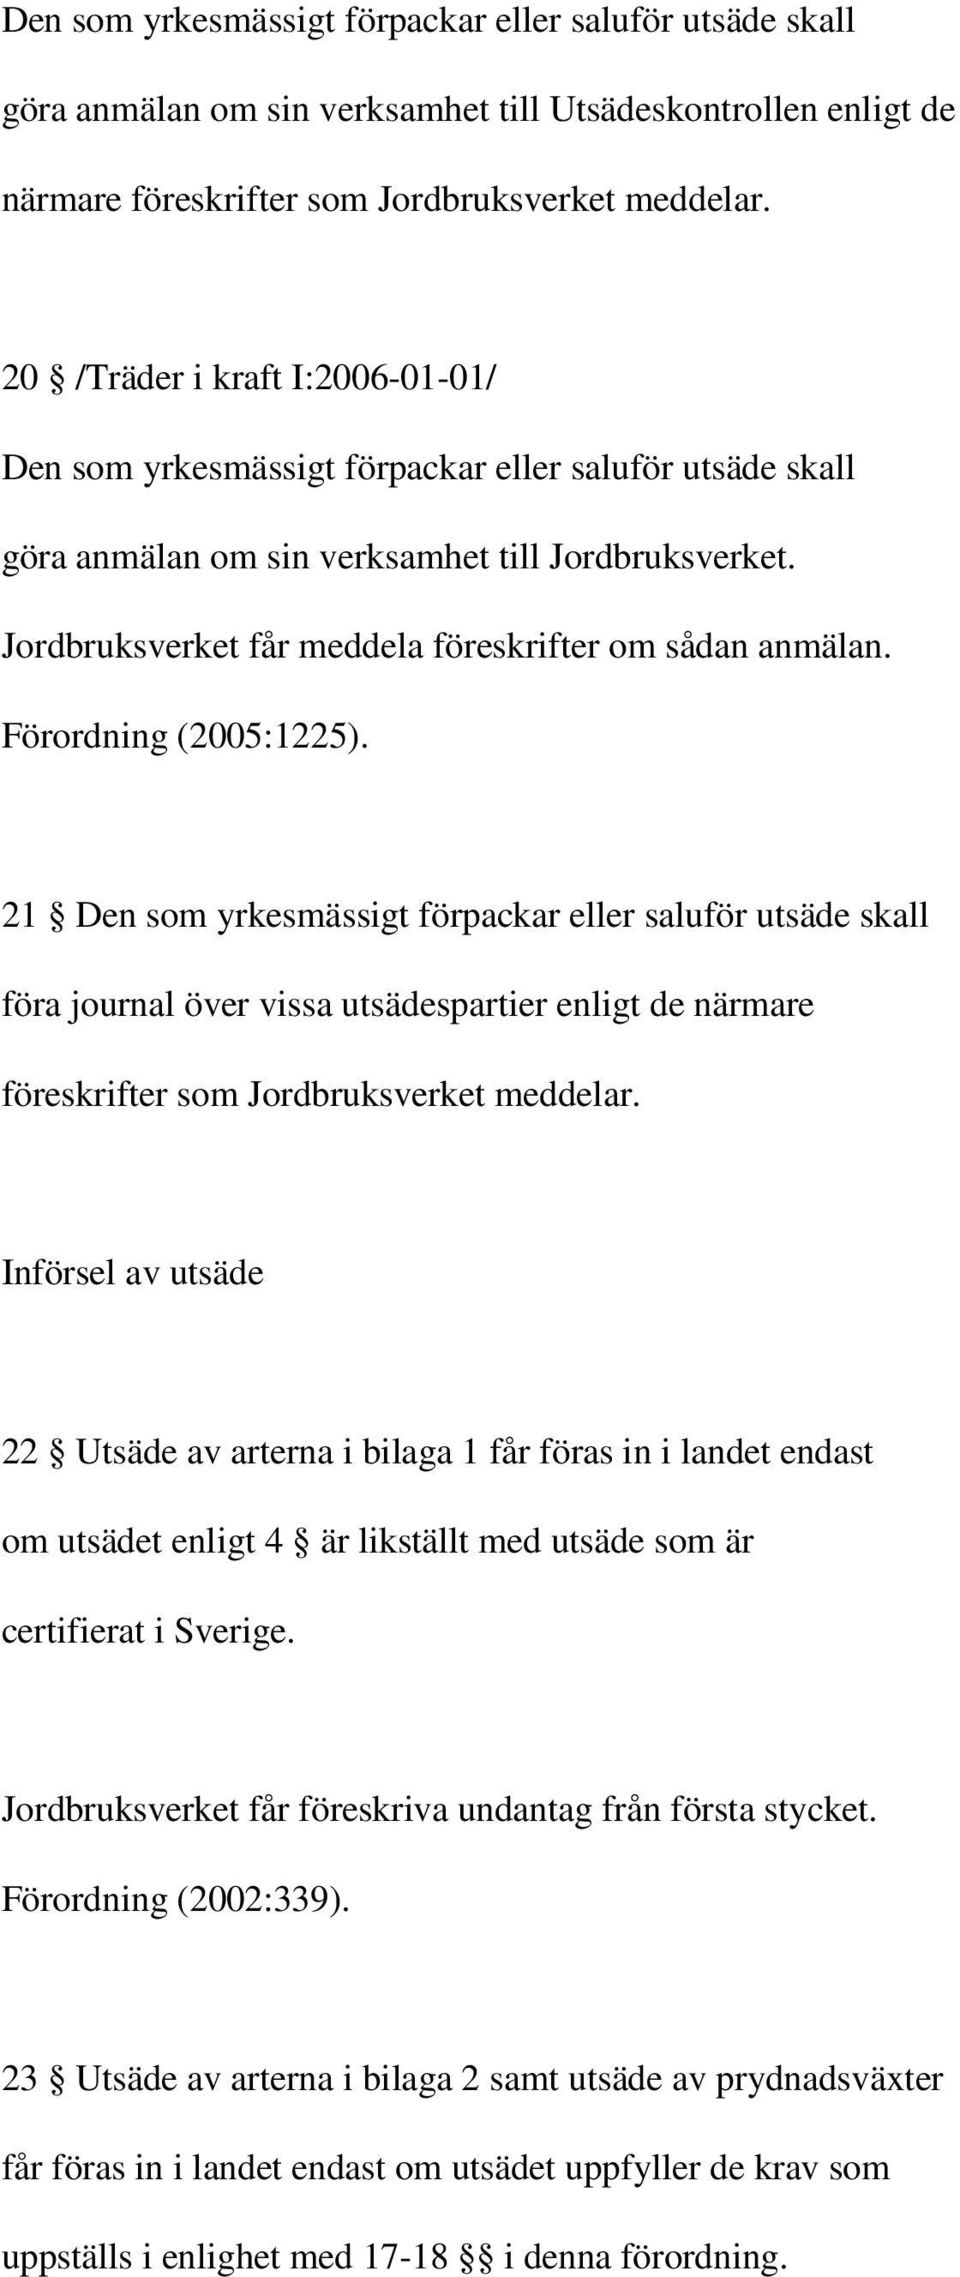 Jordbruksverket får meddela föreskrifter om sådan anmälan. Förordning (2005:1225).